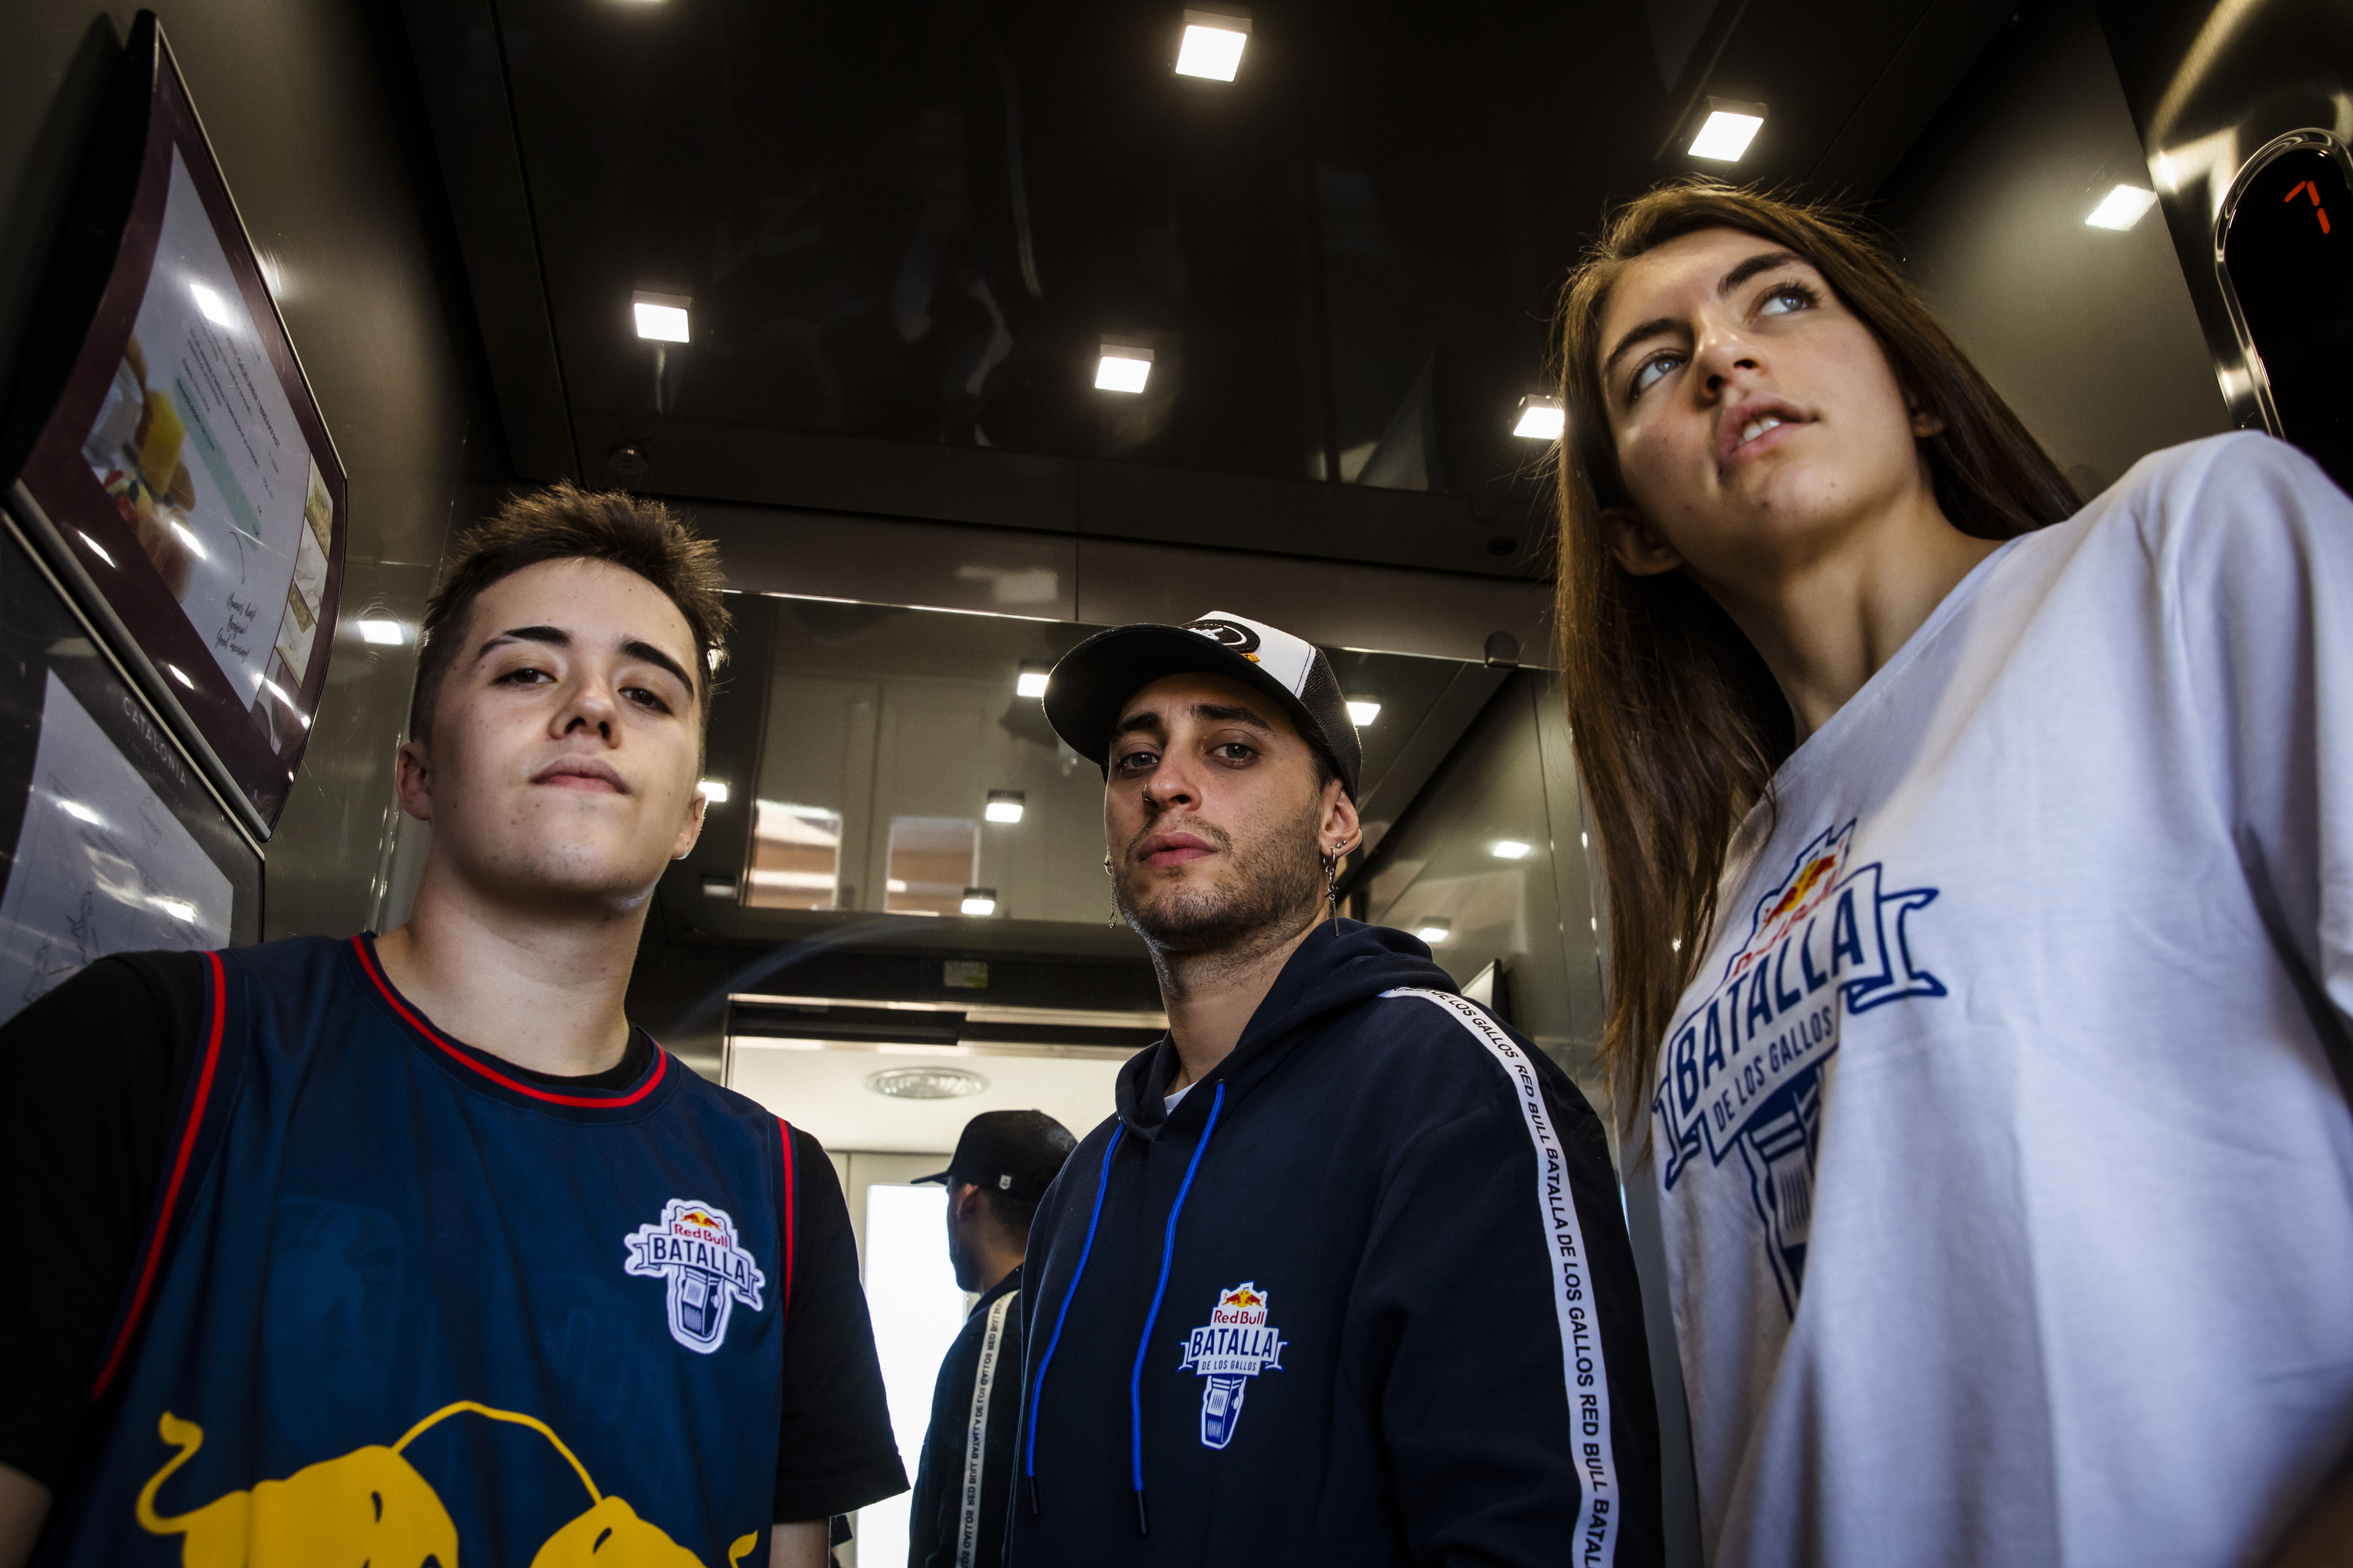 Embrión Atajos bolita Red Bull Batalla: Blon, Sara Socas y Gazir: "Las batallas de freestyle  aportan respeto y compañerismo a la sociedad" | Cultura